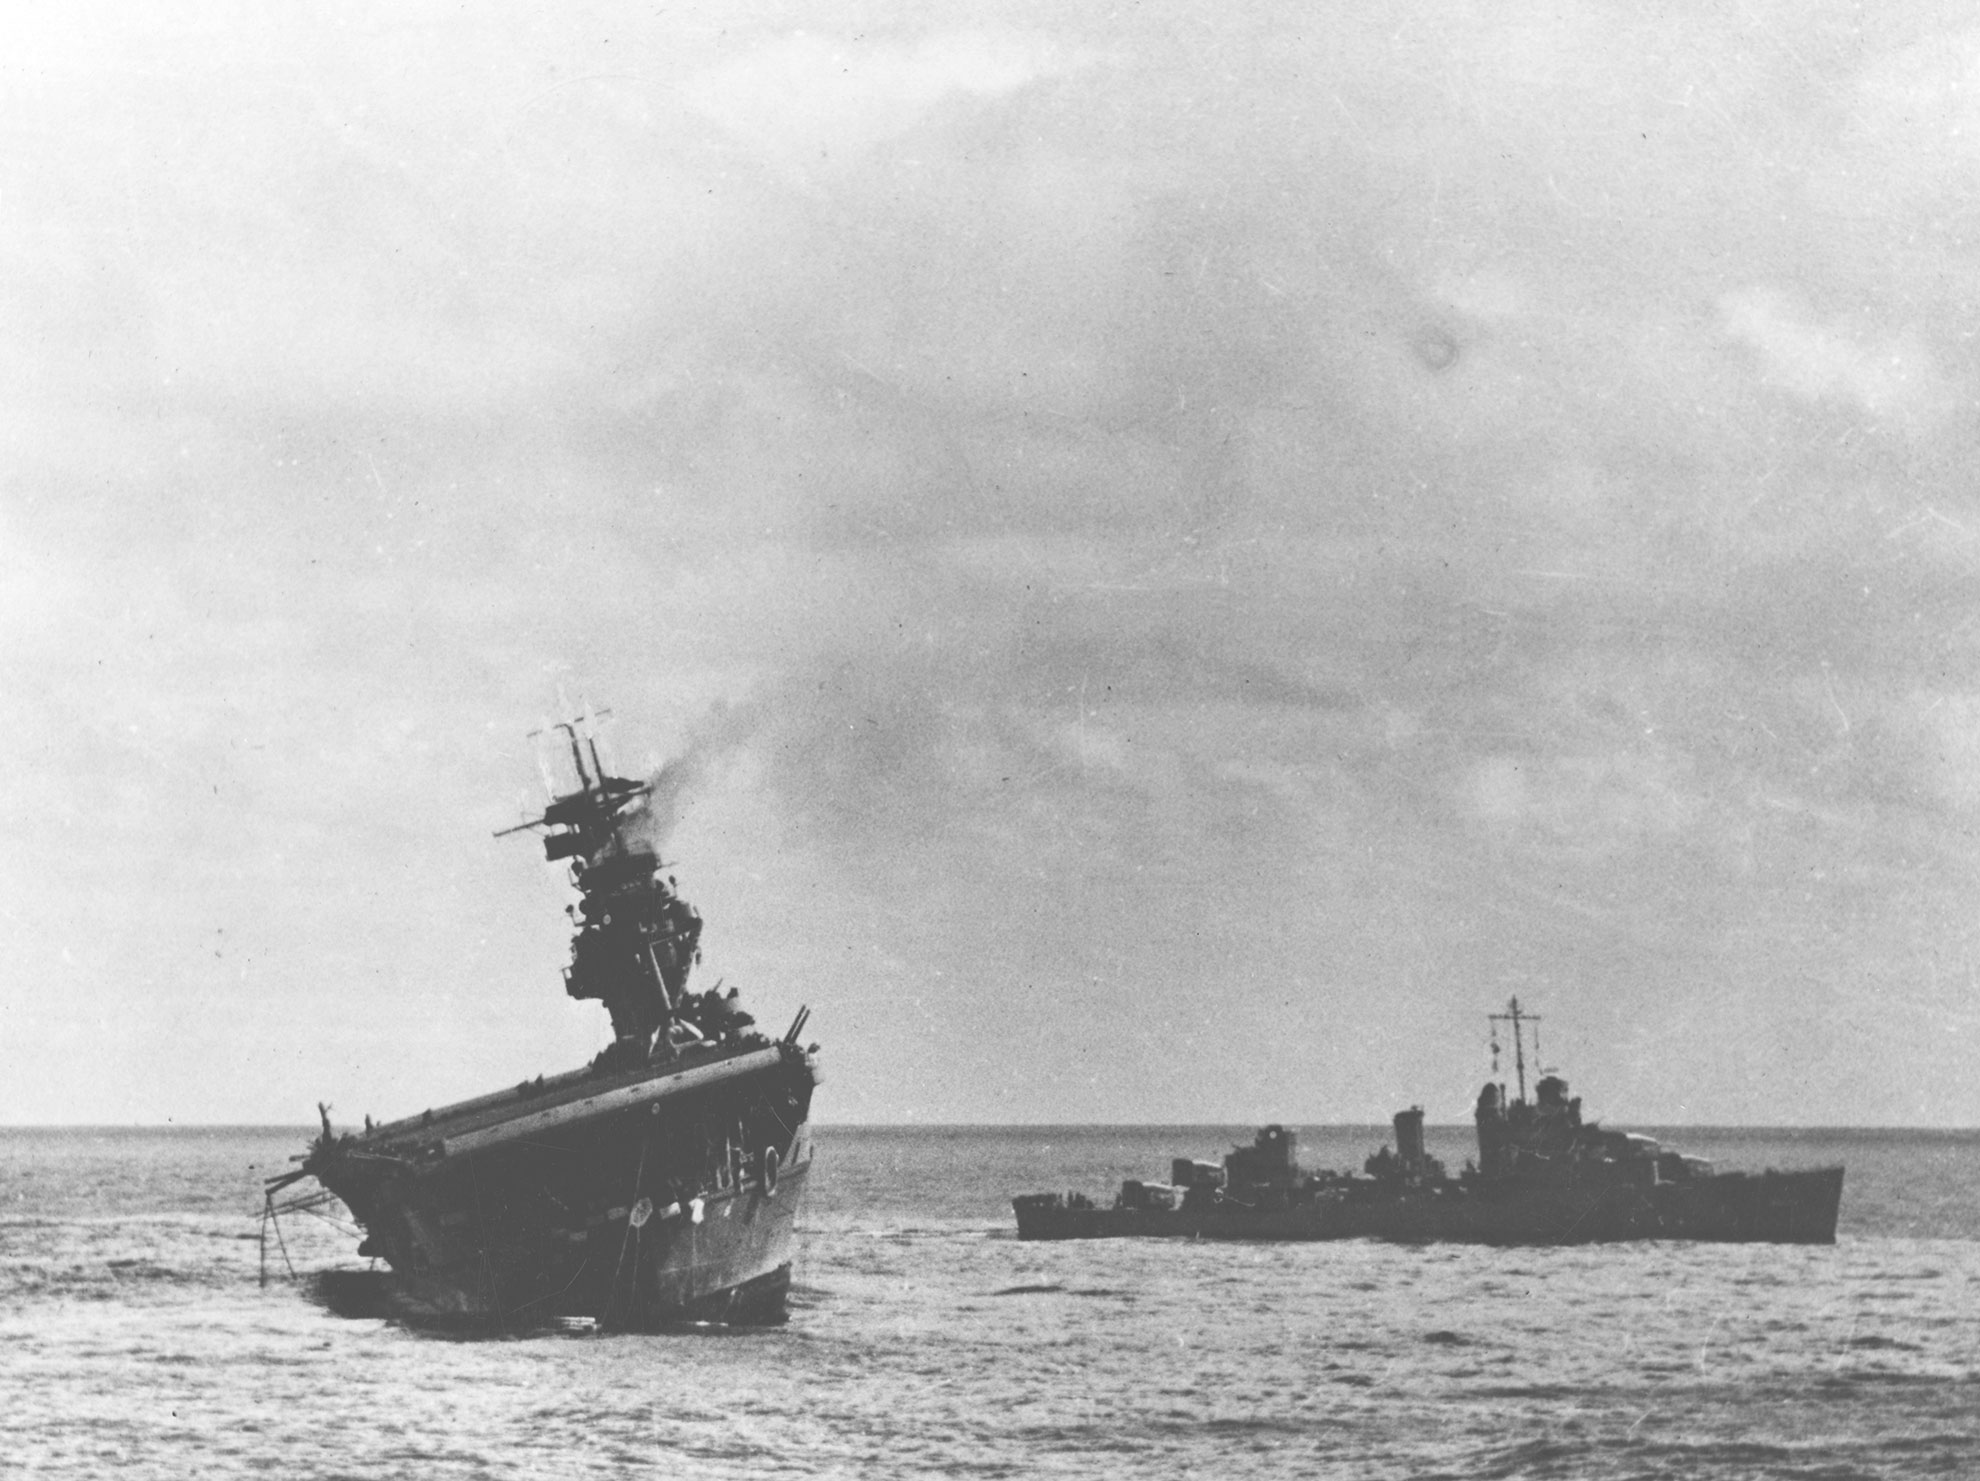 Le porte-avions USS Yorktown, évacué, est en train de couler -- Photo US Navy. -